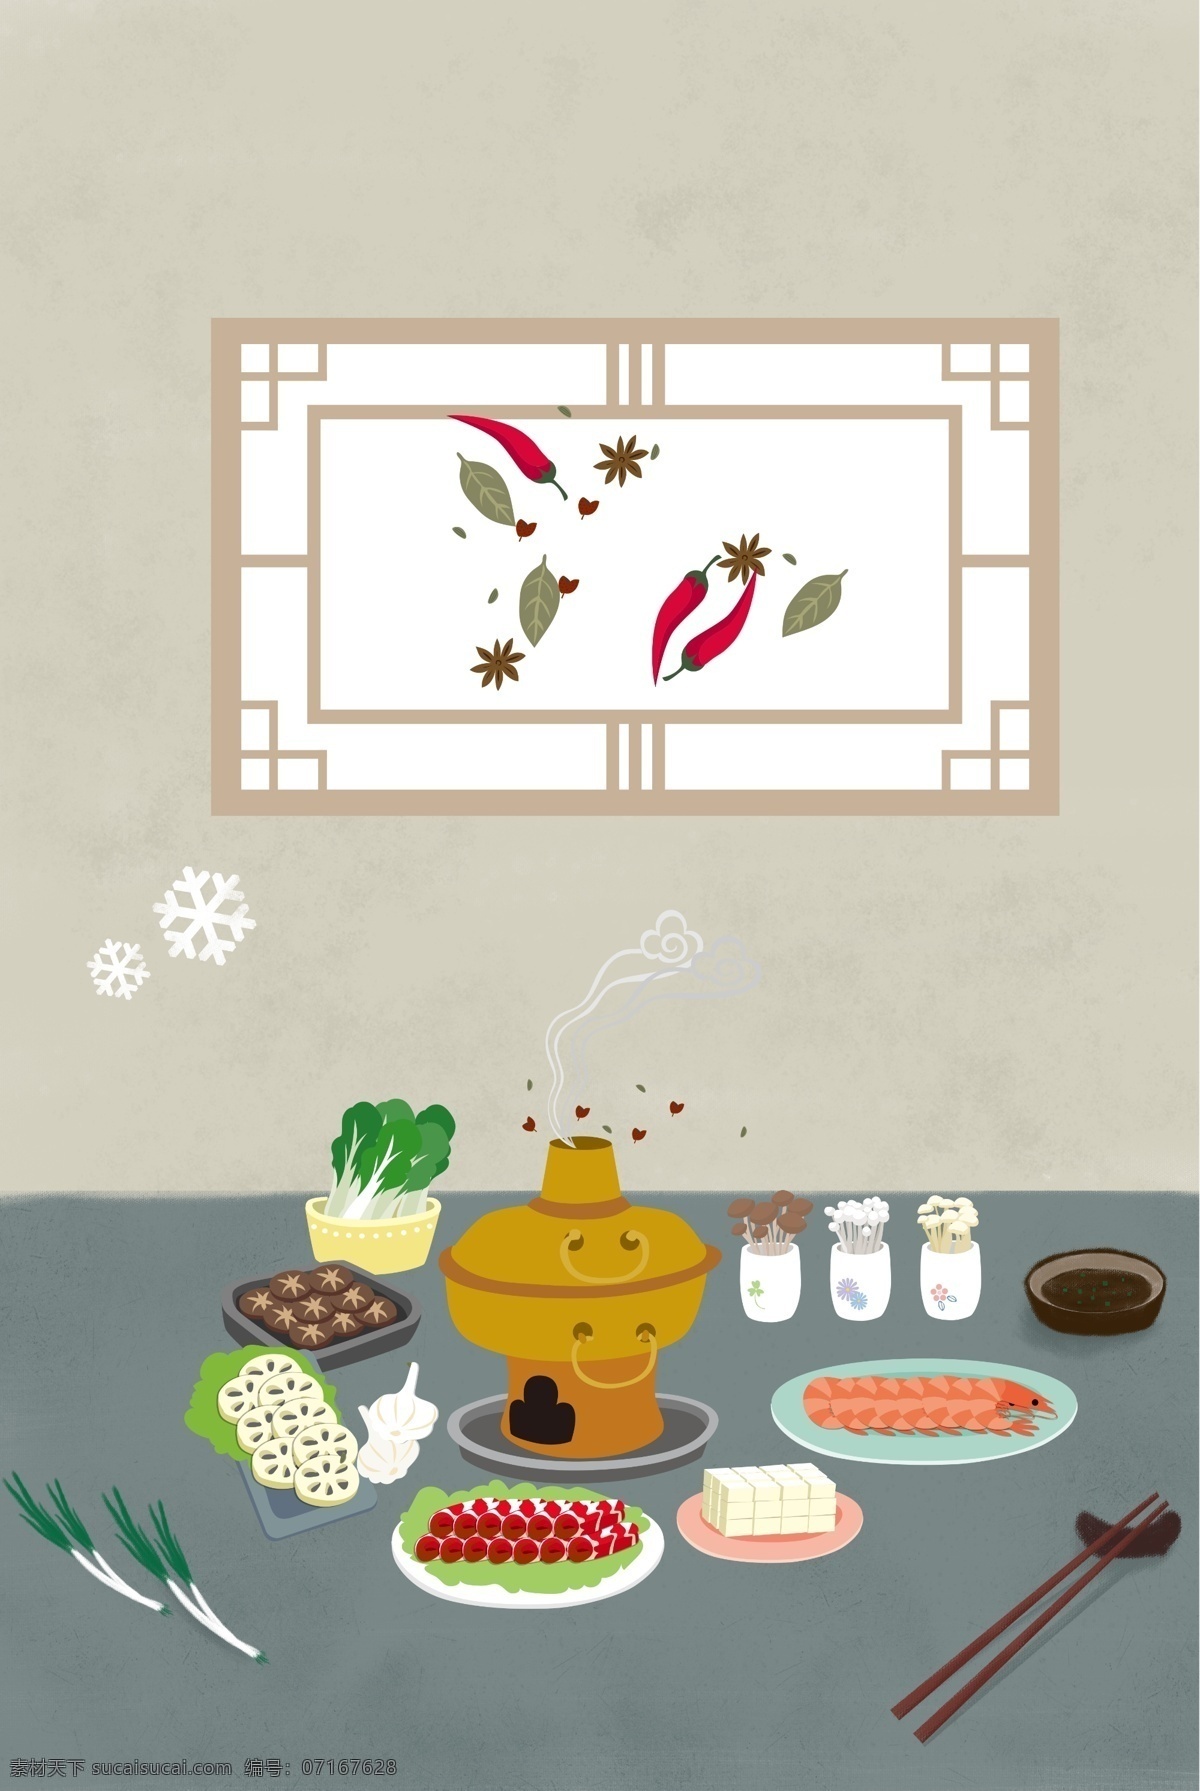 创意 特色 火锅 食品 海报 啤酒 辣椒 米饭 面食 特色食物 食物 促销海报 食品促销